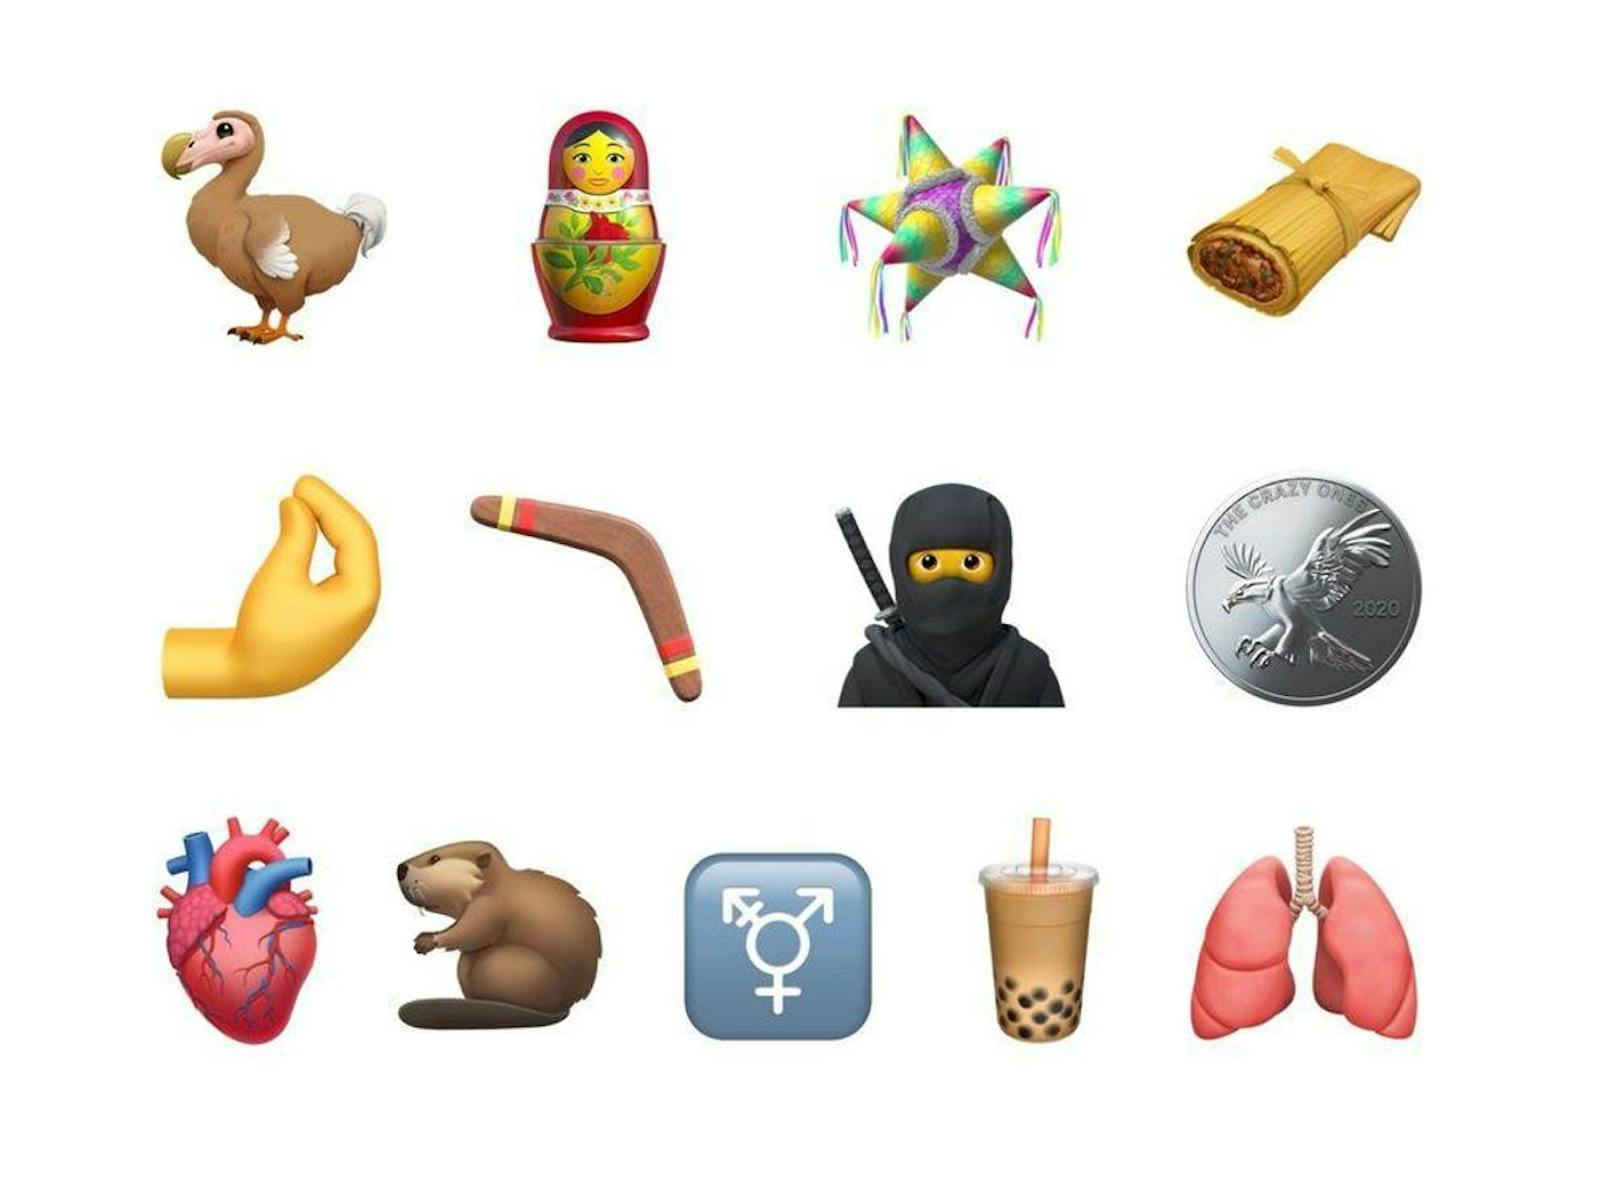 So sehen die Symbole bei Apple aus. Die nachfolgenden Bilder zeigen, wie die Emojis auf Android-Geräten aussehen.